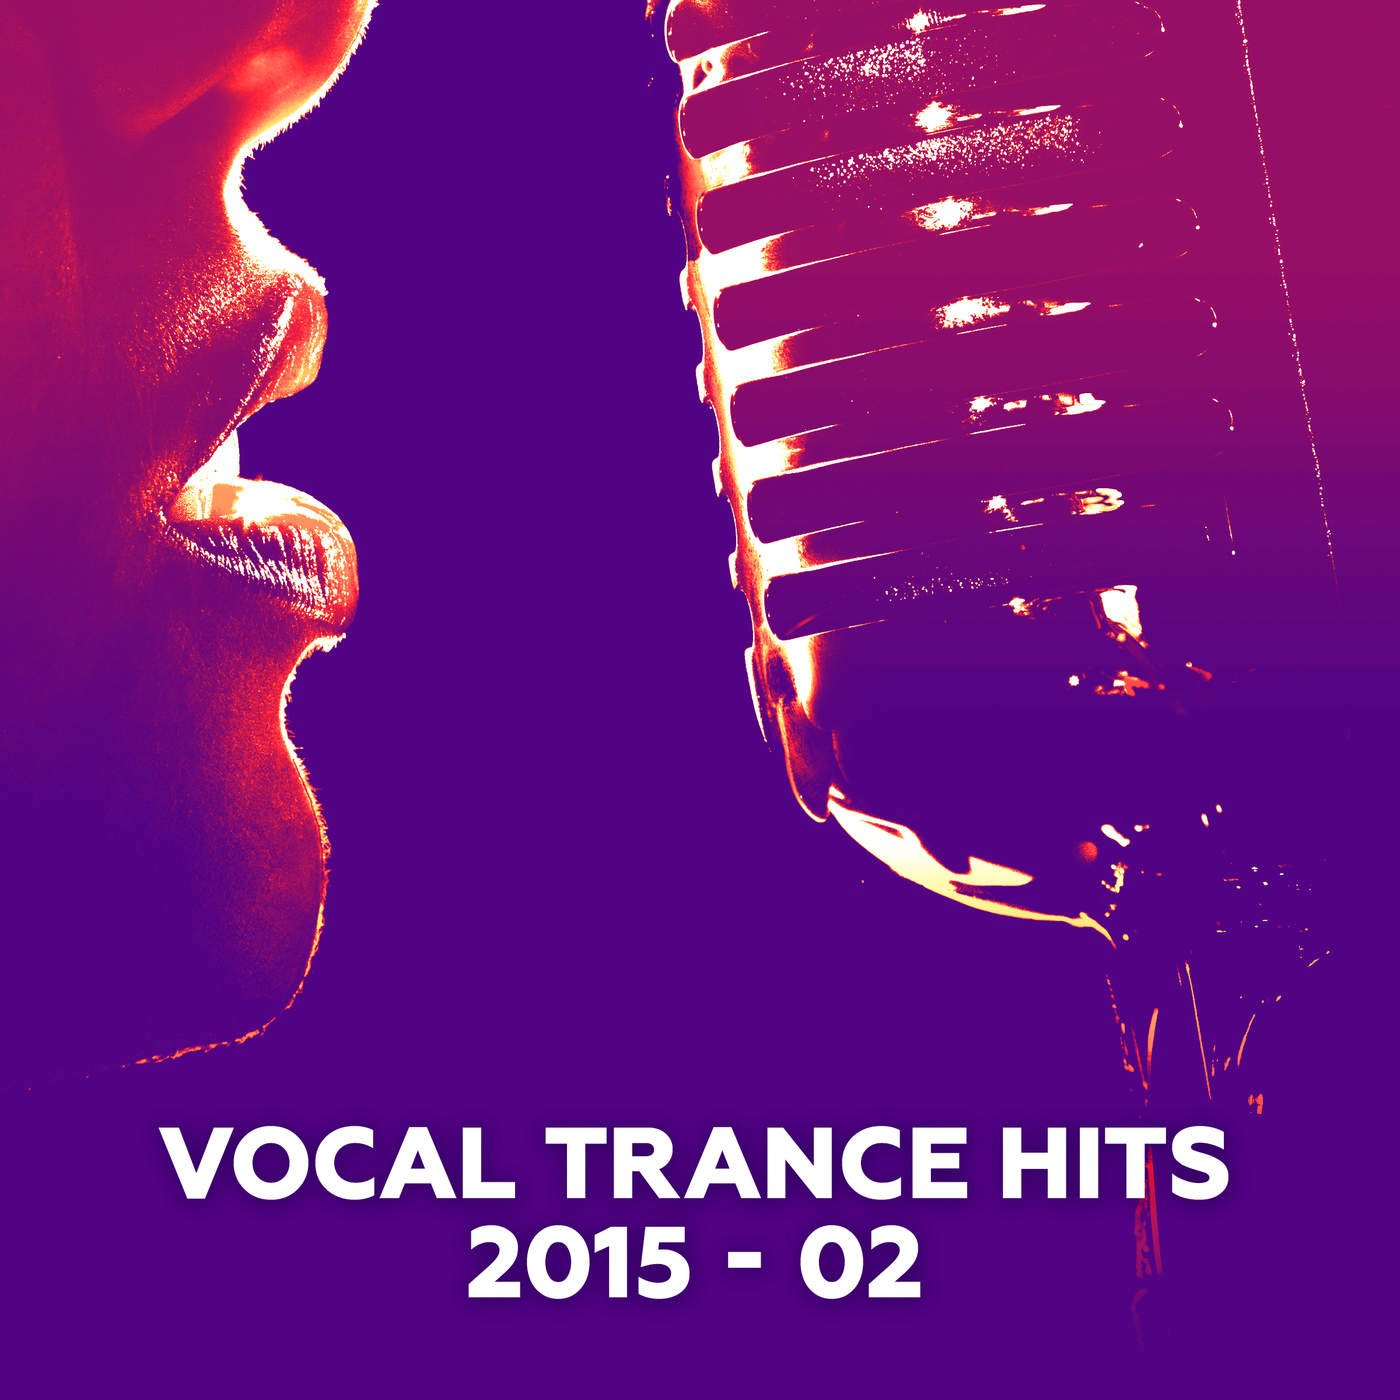 Сборник вокал транс. Vocal Trance Hits. Armada Vocal Trance Hits. Vocal Trance Hits 14. Trance Vocal обои.